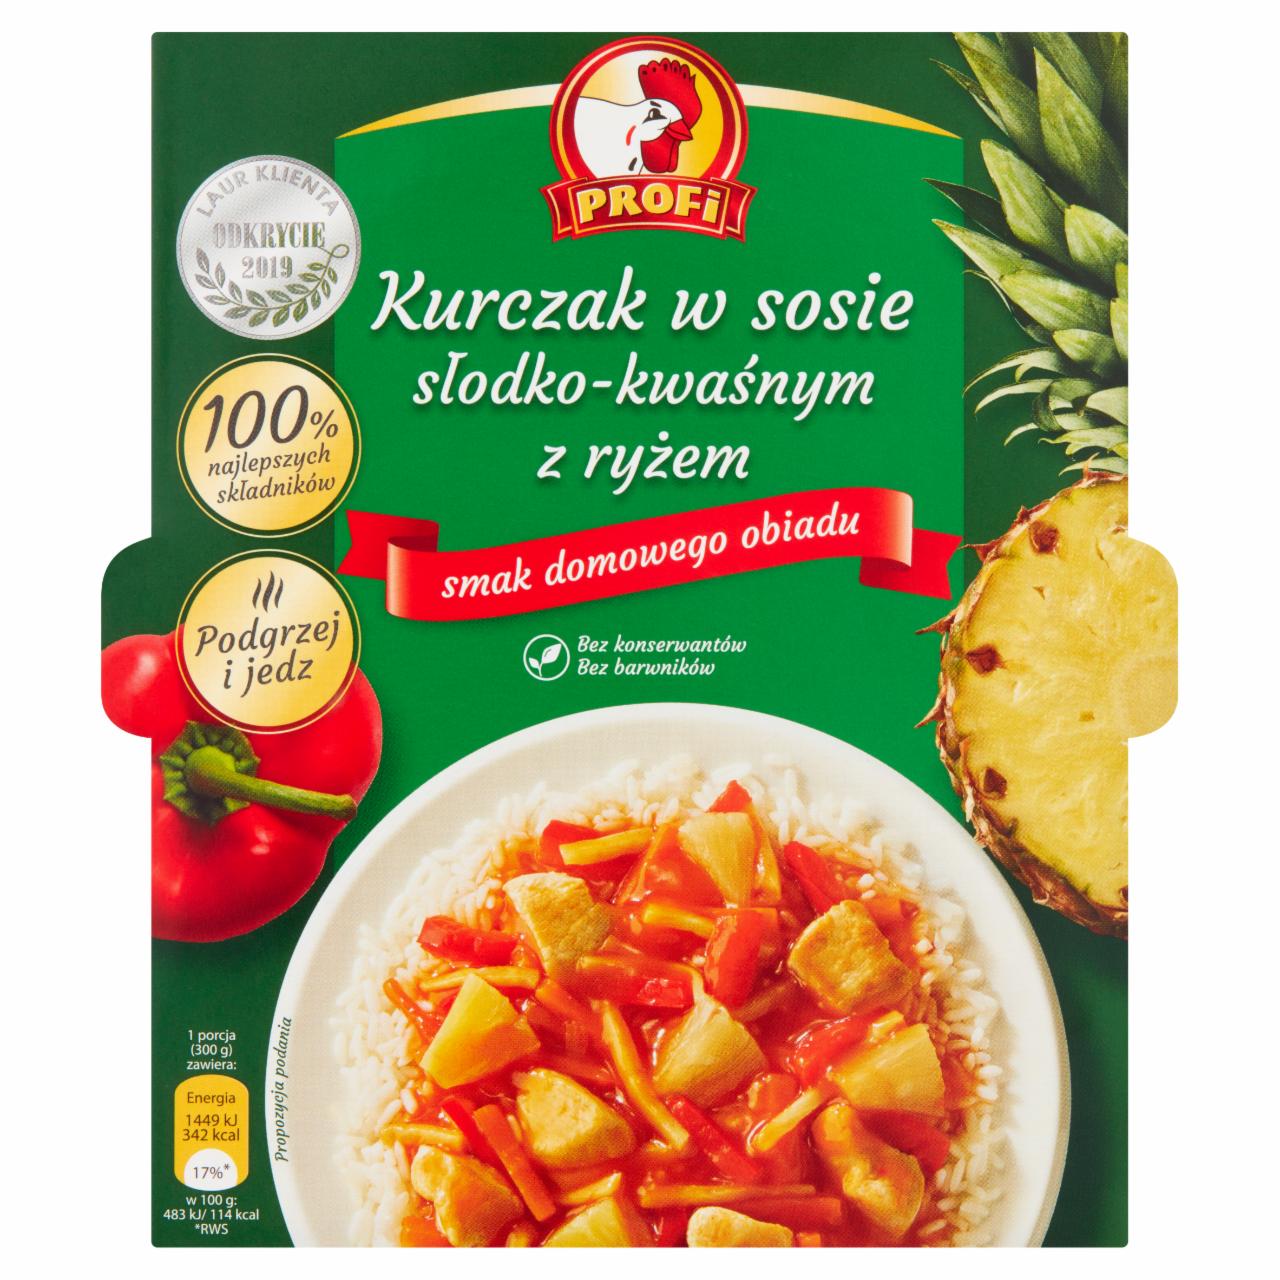 Zdjęcia - Profi Kurczak w sosie słodko-kwaśnym z ryżem 300 g